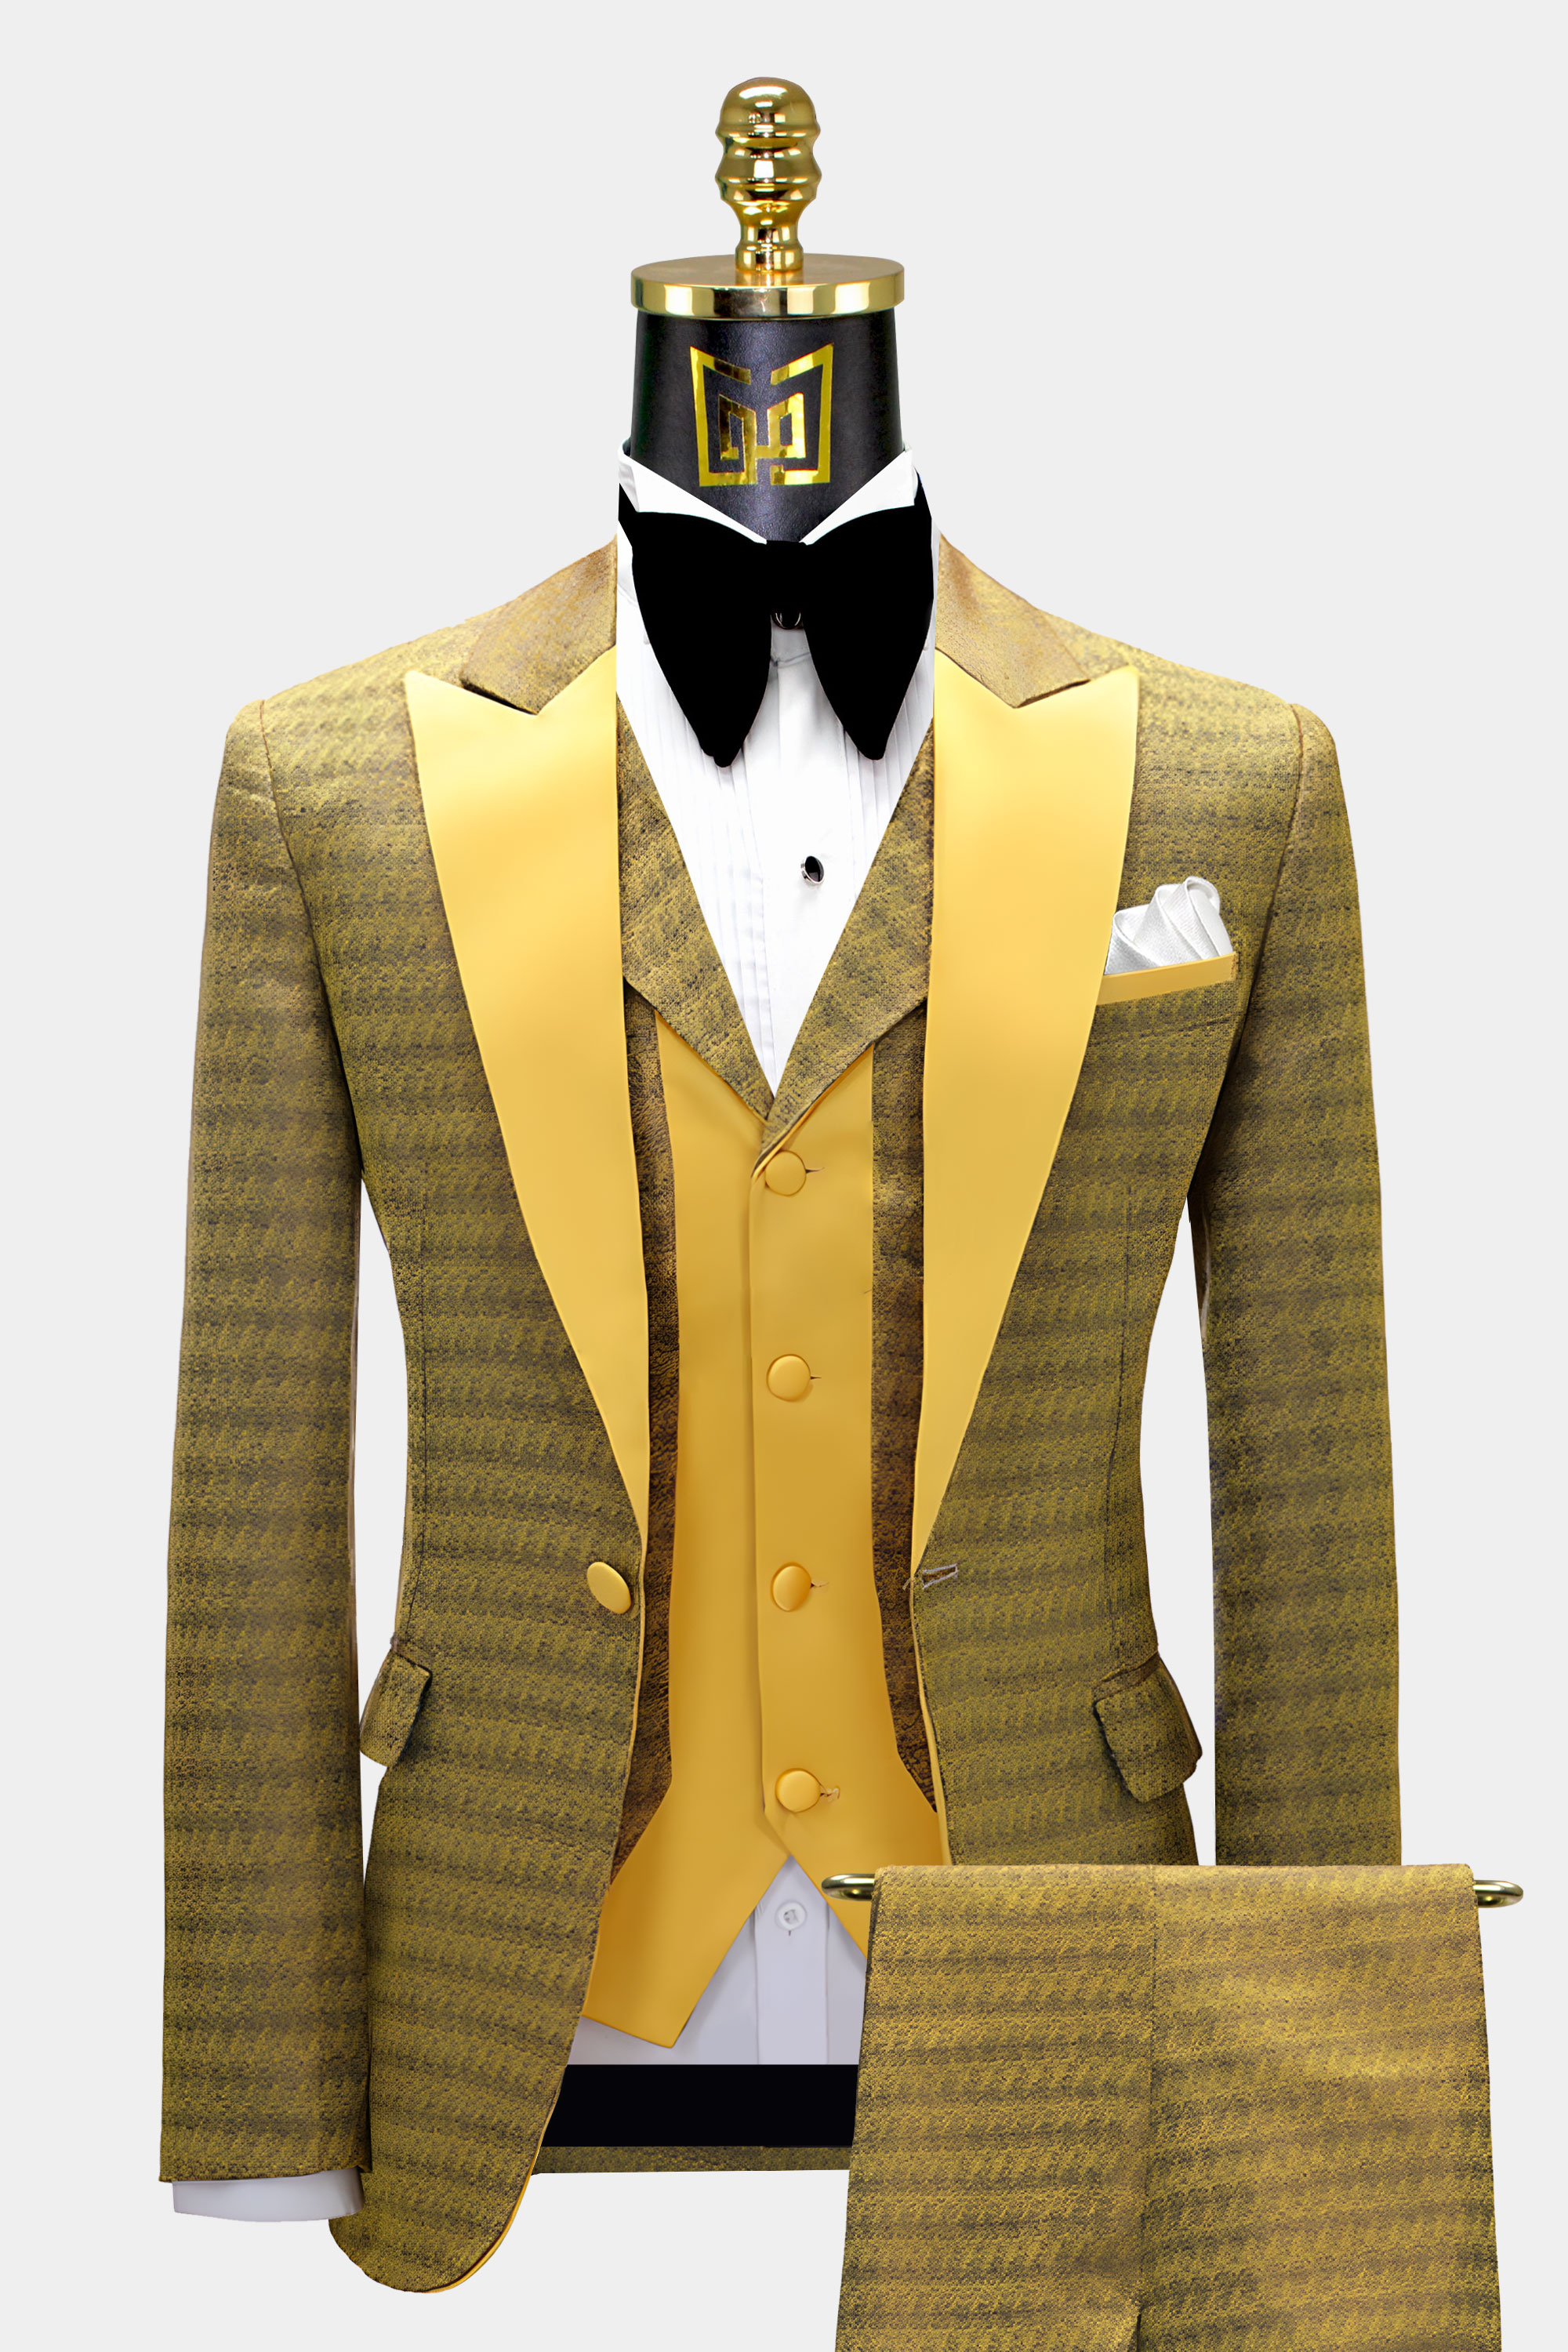 Mens-Golden-Tuxedo-Groom-Wedding-Prom-Suit-from-Gentlemansguru.com